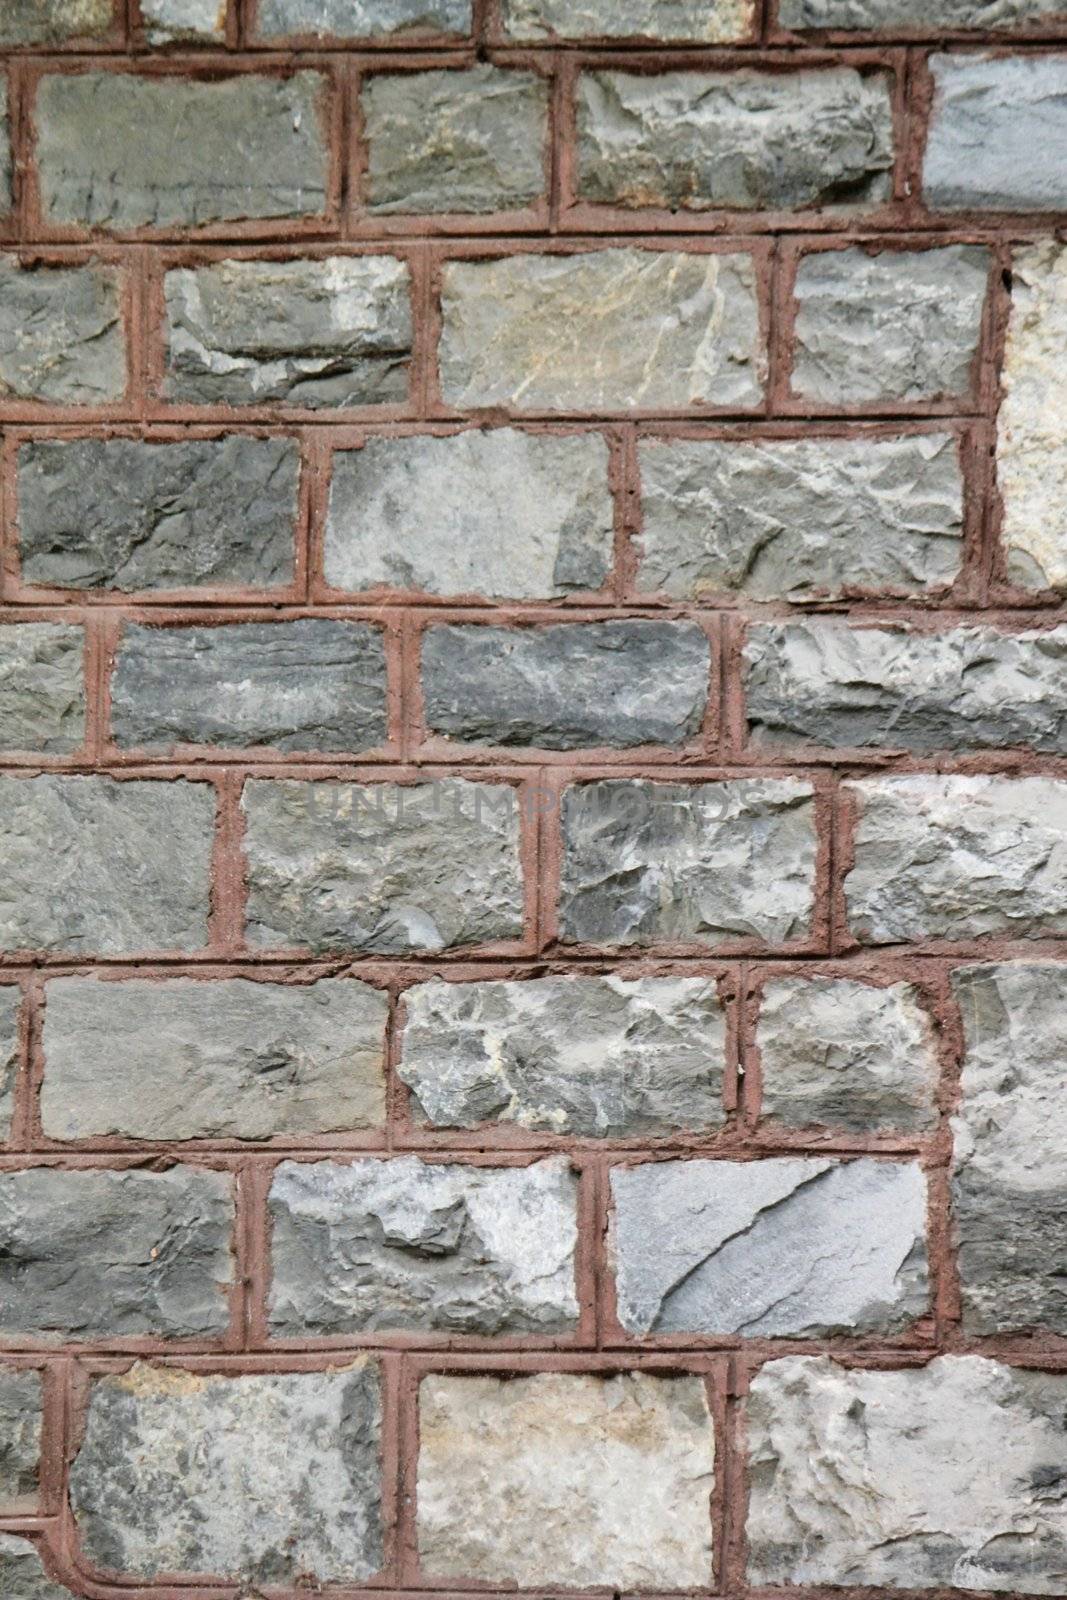 Brick wall by Elenaphotos21